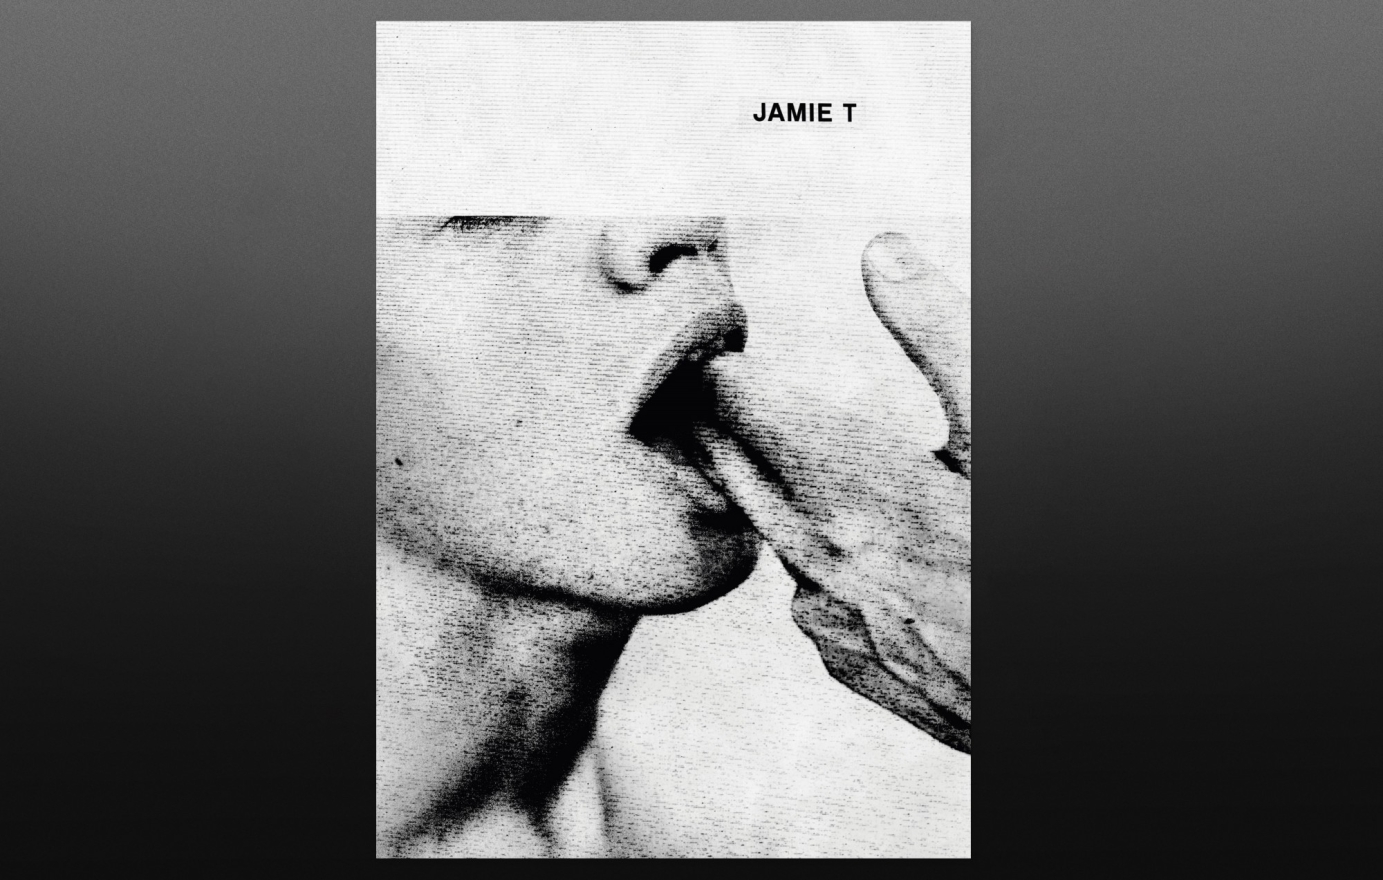 JAMIE T - Single Artworks